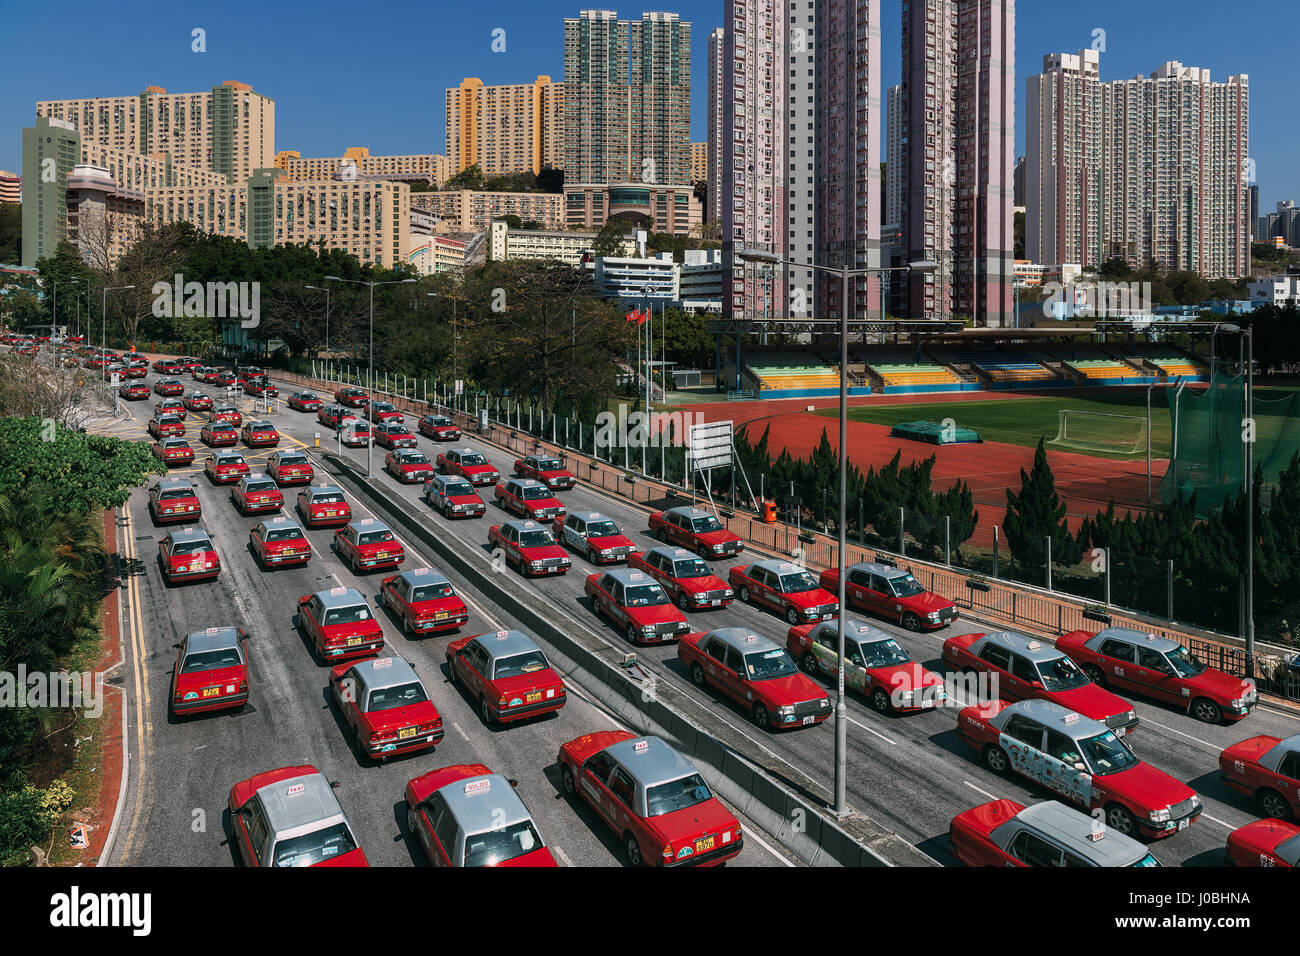 HONG KONG, CHINA: Überhaupt gewundert, wie Ihre Stadt aussehen würde, wenn Taxis die Straßen regiert? Diese befremdliche Bilder geben einen Einblick in eine seltsame Welt, wo Taxis dominieren, wie durch ein Reisefotograf konzeptualisiert.  Die roten und weißen Taxis von Kowloon in Hong Kong kann gesehene Nase zu Endstück rund um die legendäre Stadt schlängelt.  Andere Bilder zeigen eine Formation von Flugzeugen in den Himmel als auch erhöhten Straßenbahnen. Australische Fotograf Peter Stewart (31), jetzt Leben in Hongkong Taxi Übernahme vorgestellt und bis zu sechs mühevolle stundenlang um jedes komplette Foto zu erzeugen. Stockfoto